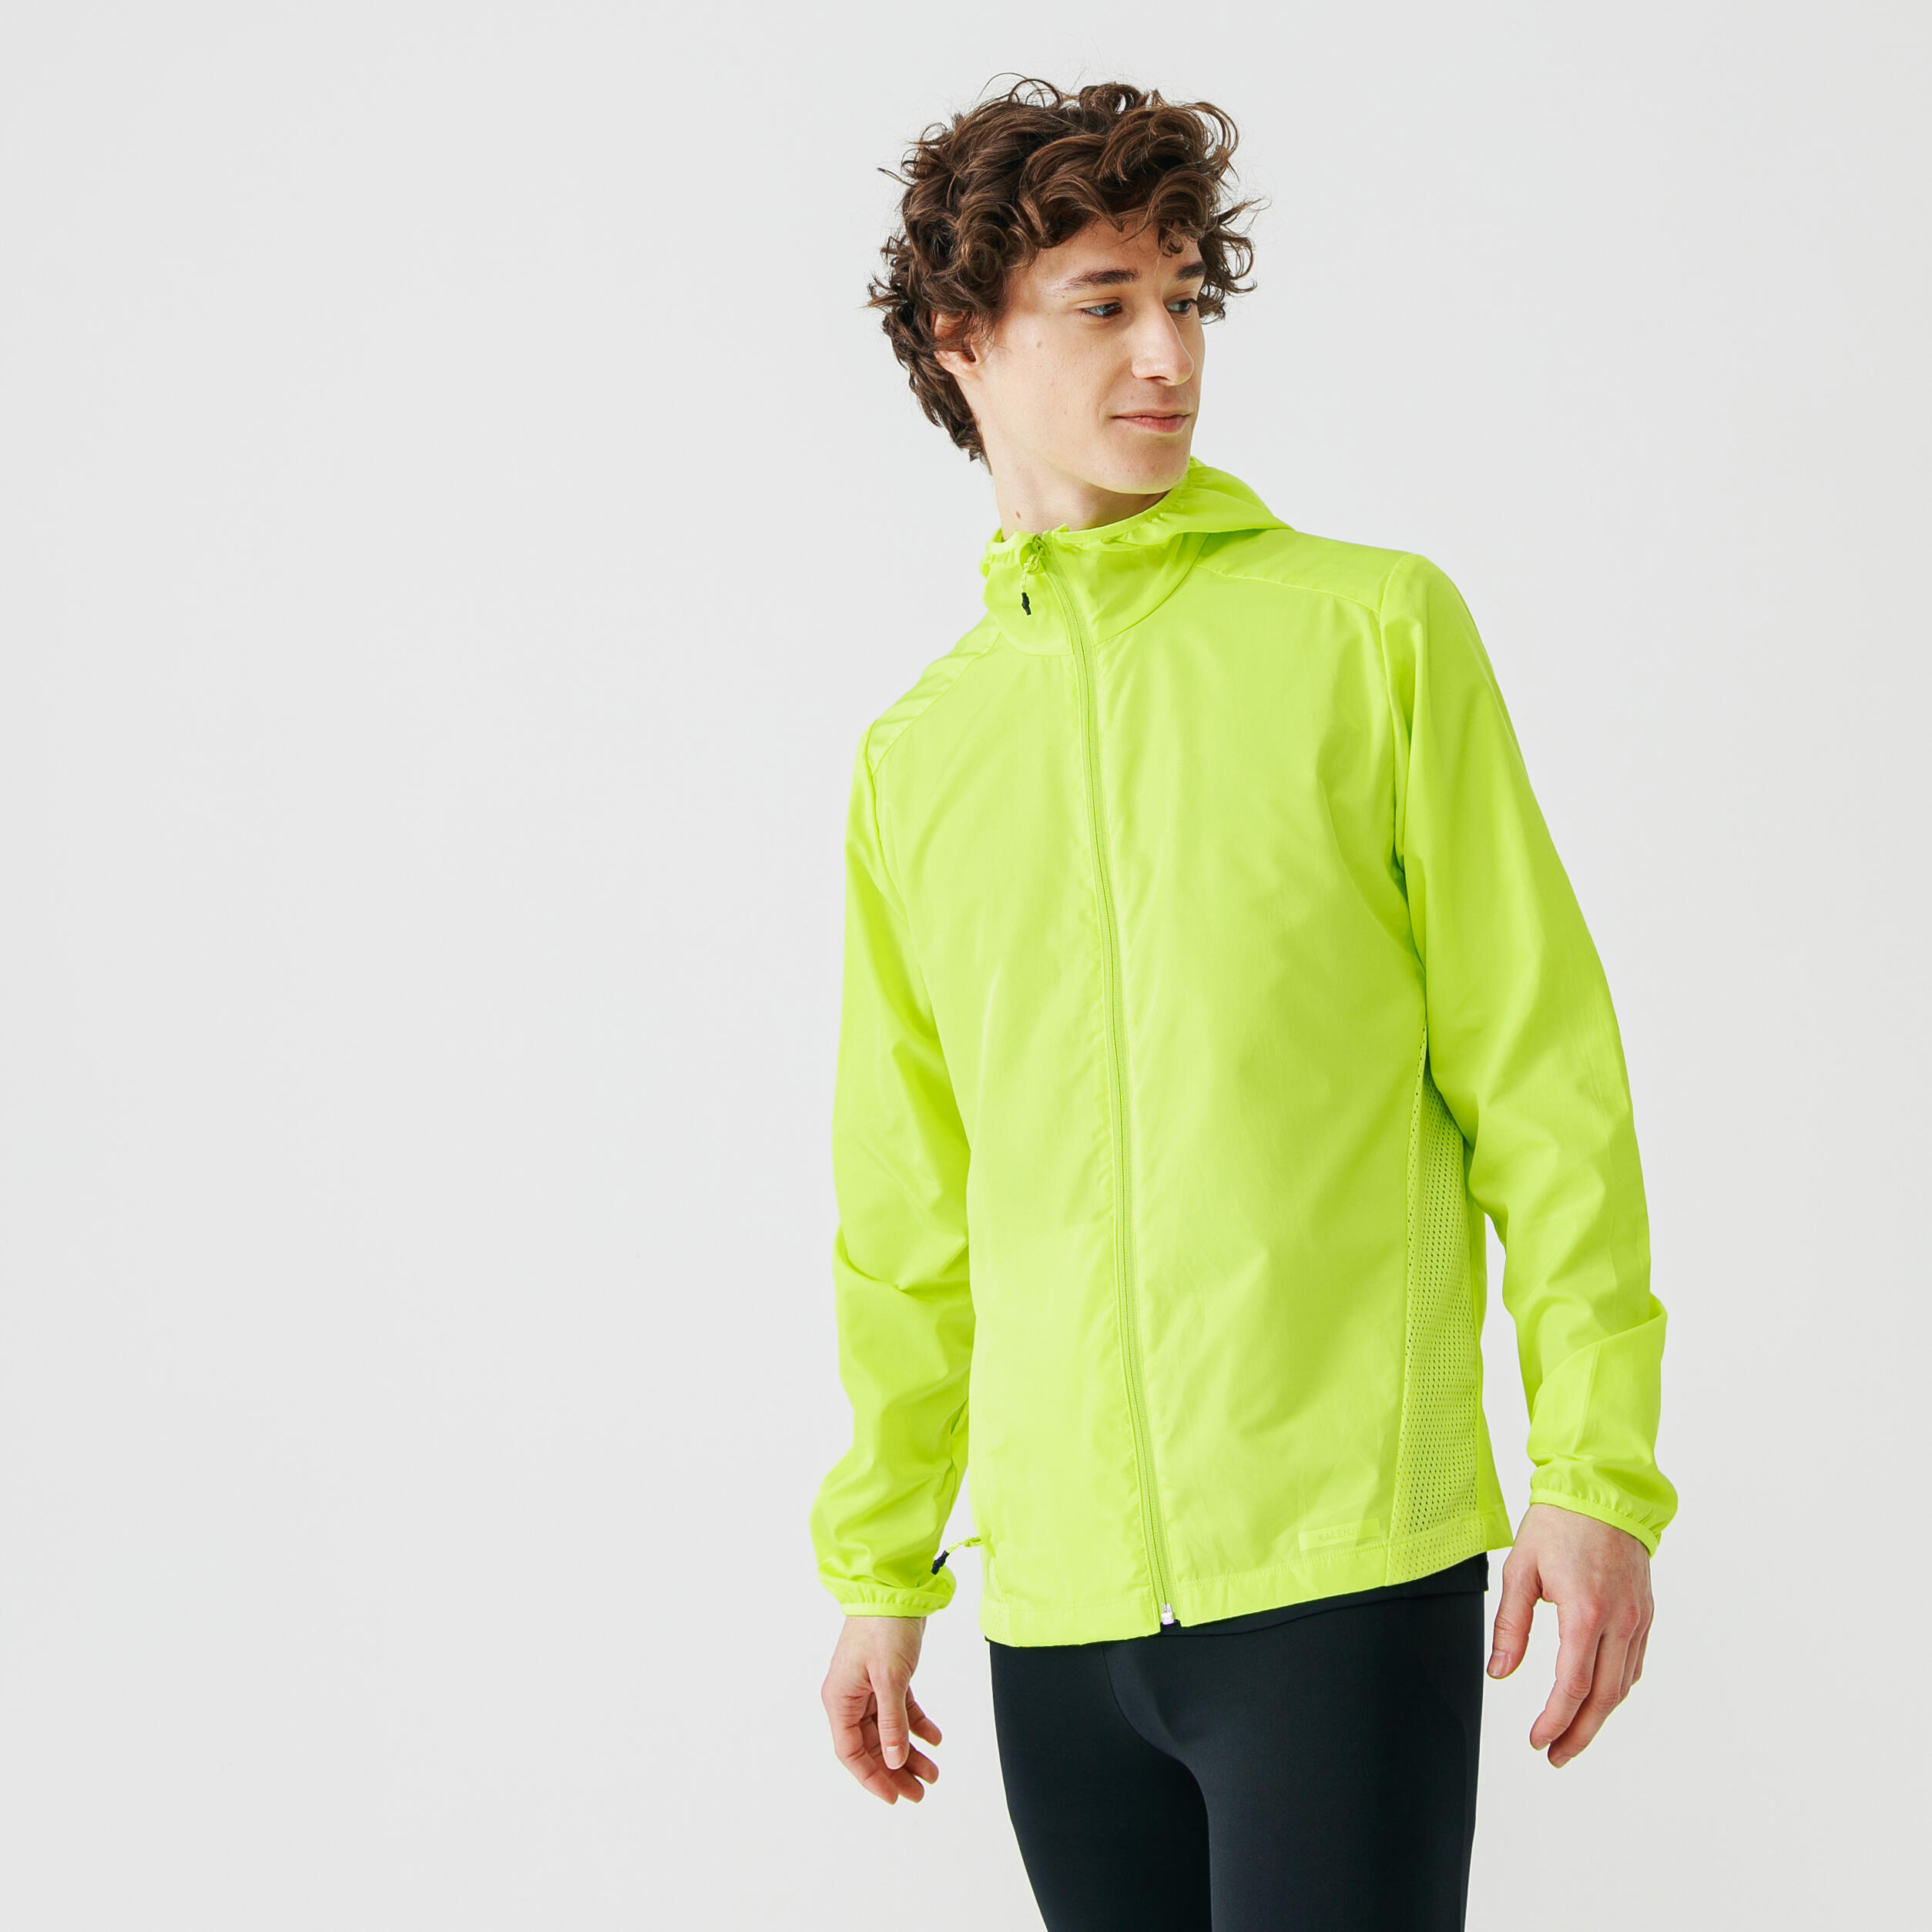 chaqueta-cortavientos-running-hombre-run-wind-amarillo-fluorescente-1.jpg